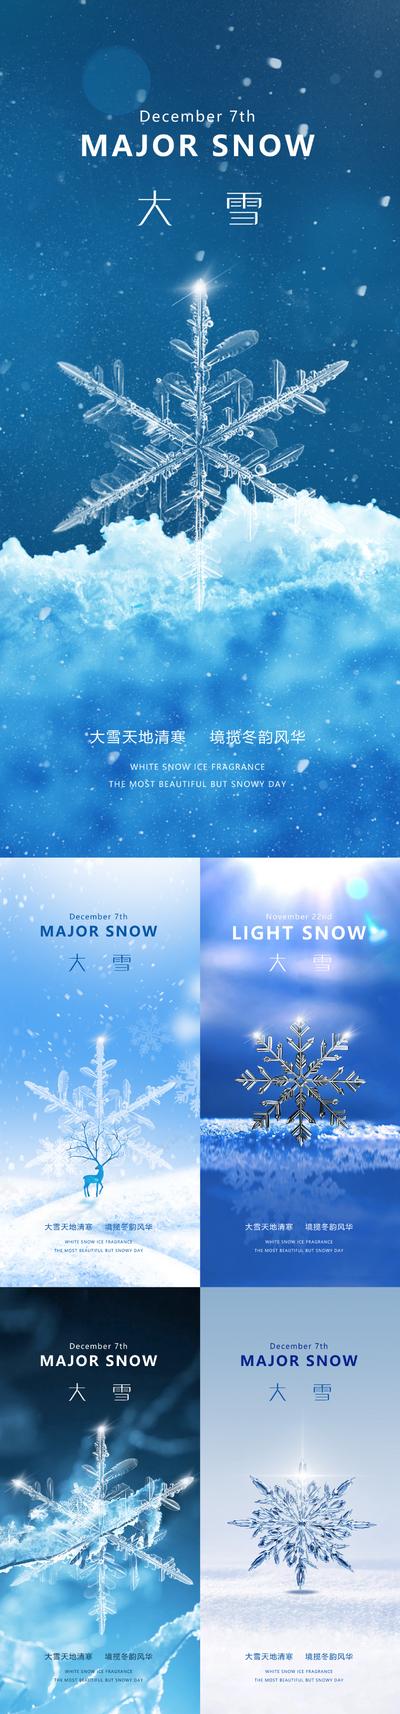 南门网 大雪节气系列海报